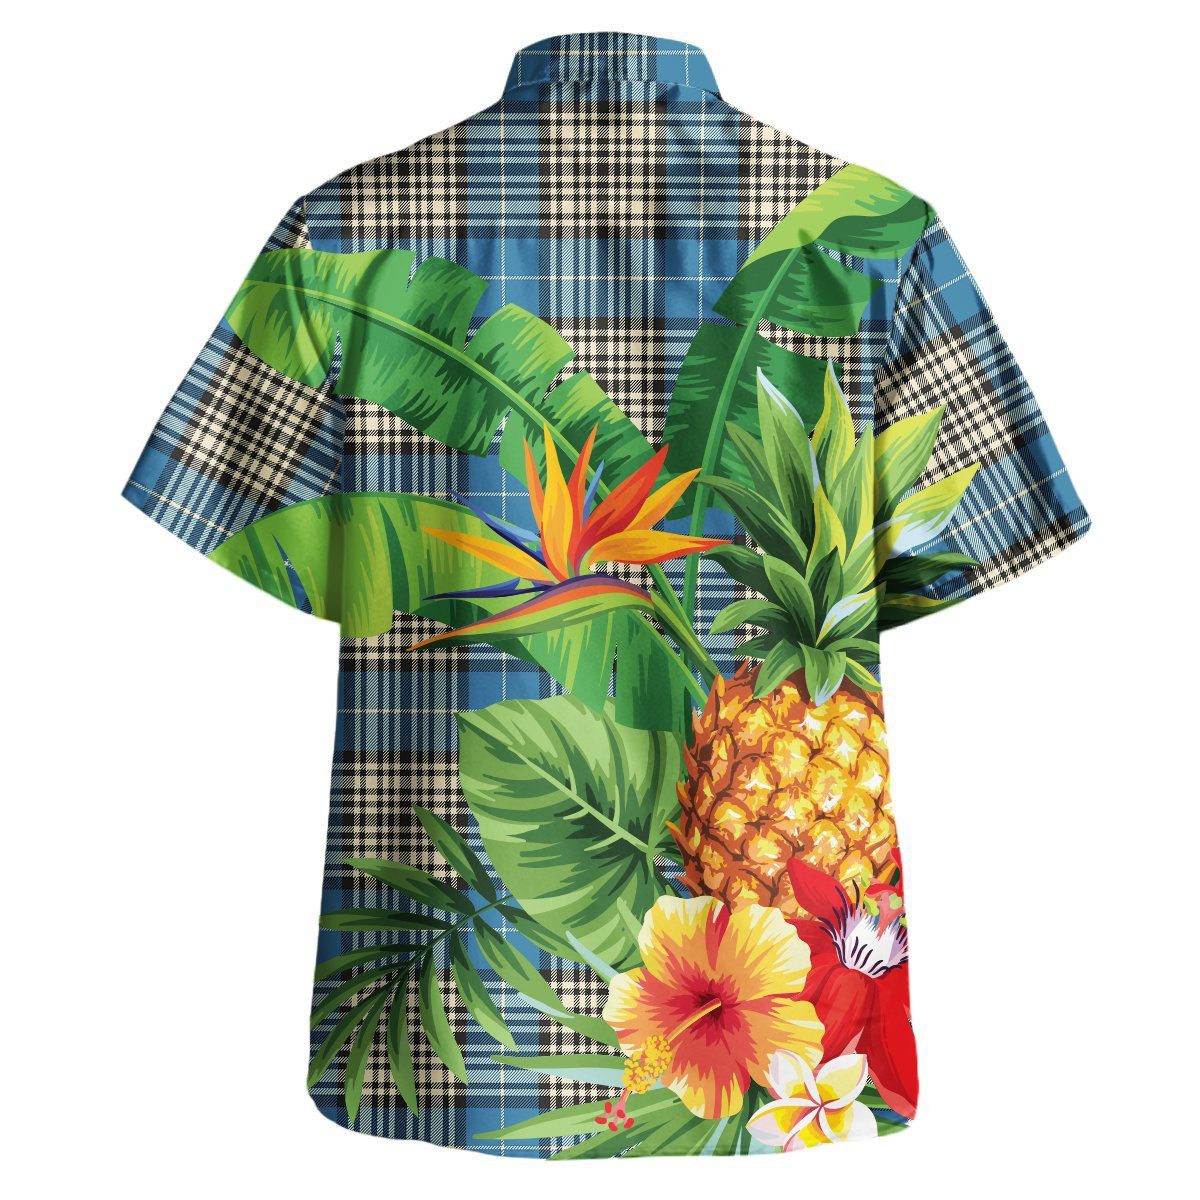 Napier Ancient Tartan Aloha Shirt version 2